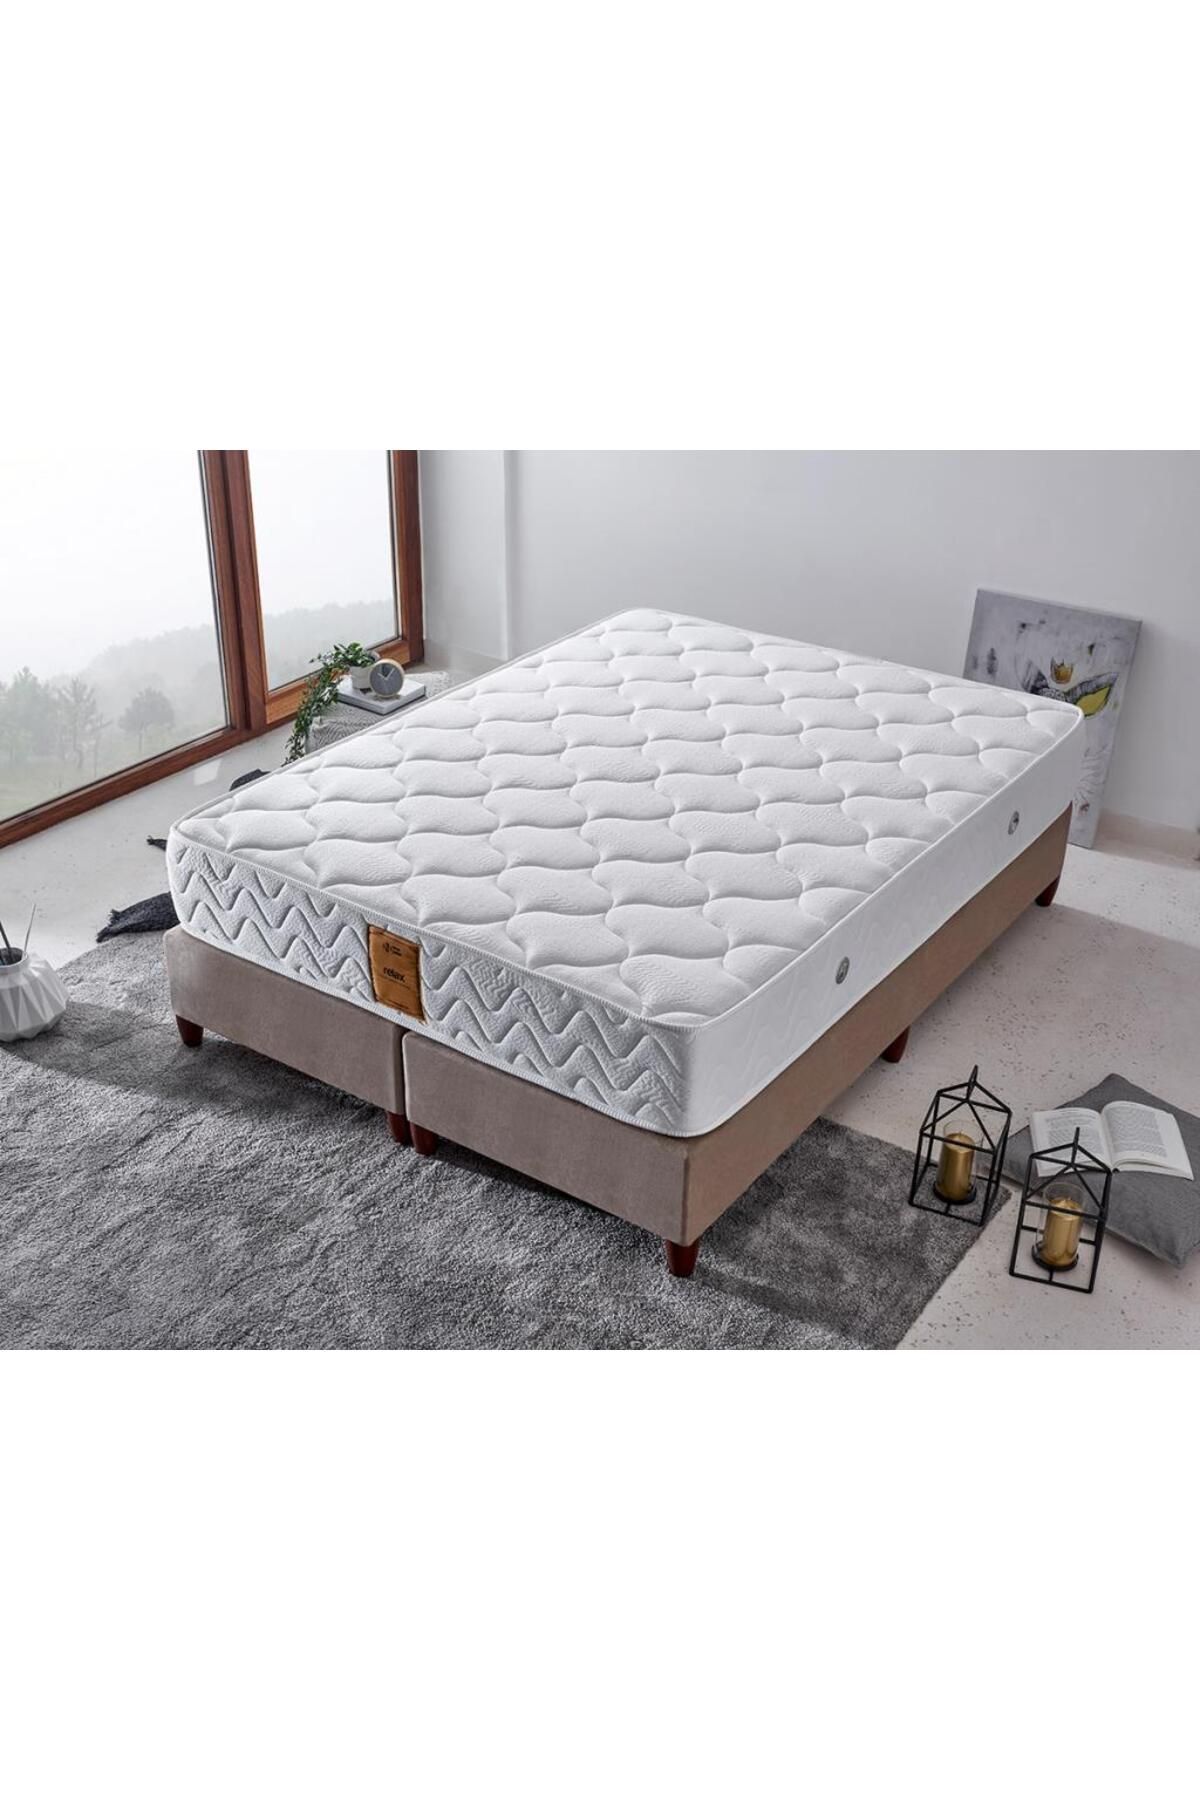 Niron Yatak Relax Yatak Çift Kişilik Orta Sert Lüks Ortopedik Yatak Pamuklu Örme Kumaş Beş Yıldızlı Otel Yatağı